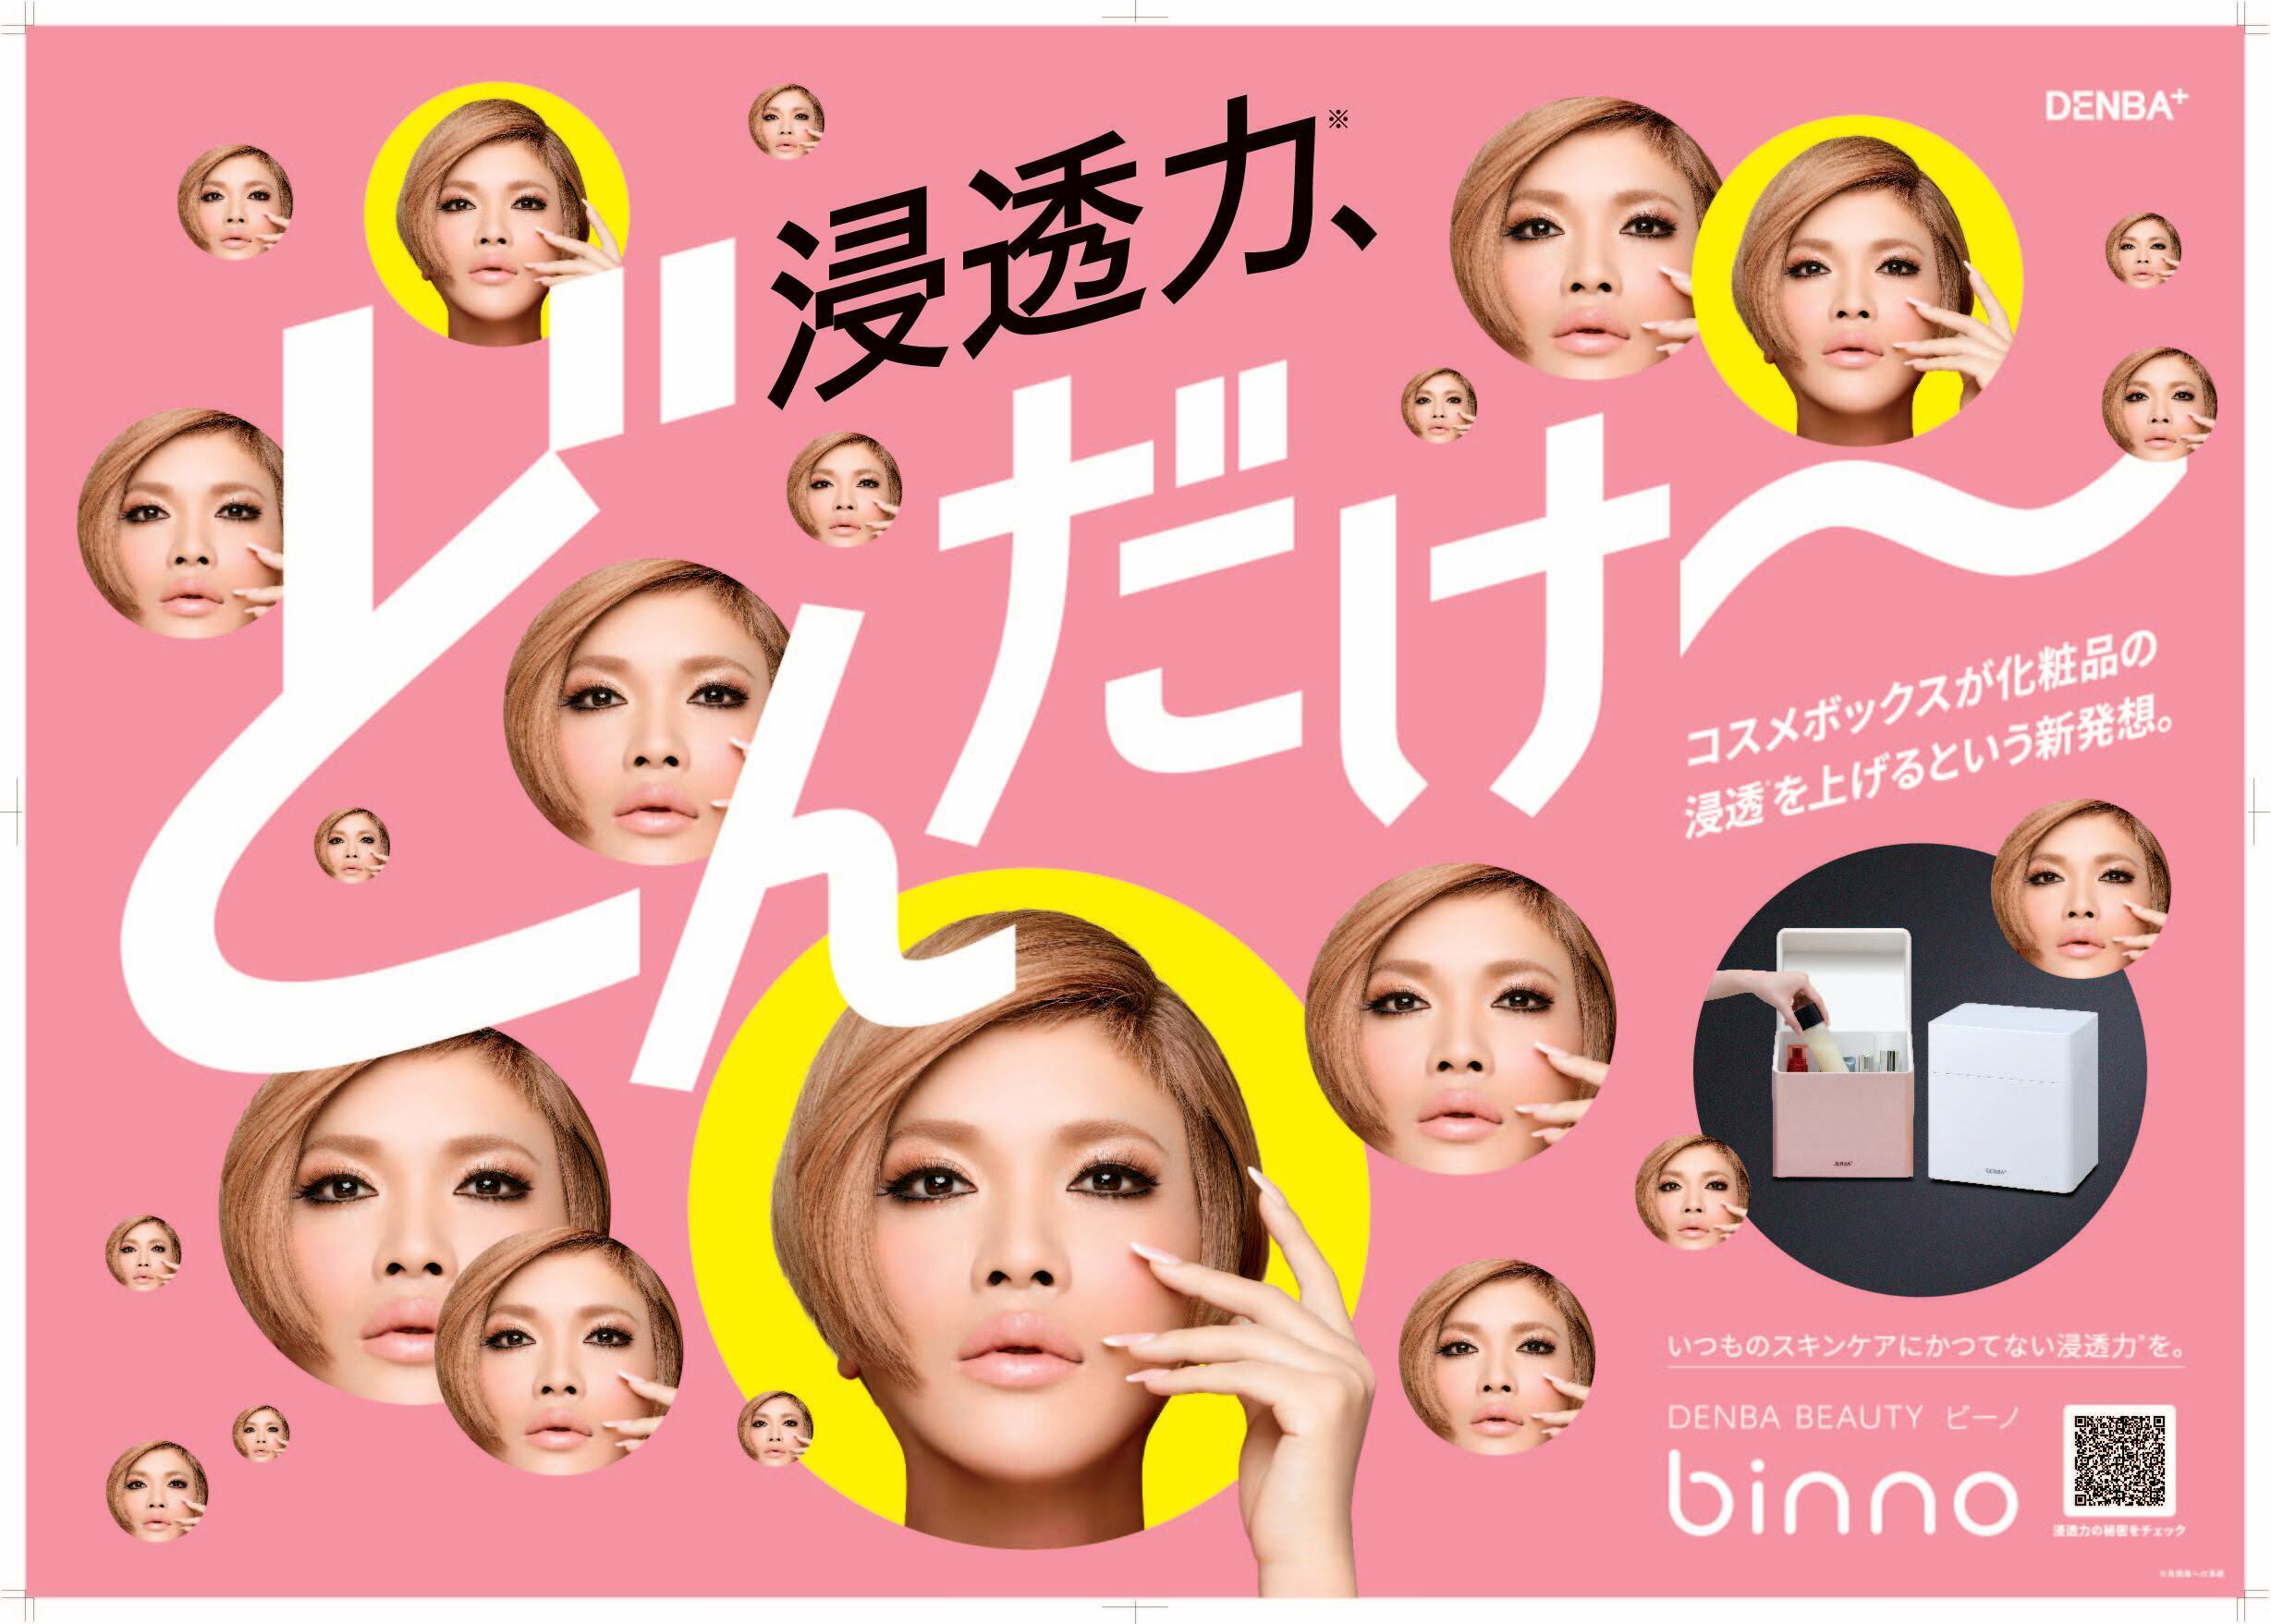 新発想コスメボックス「DENBA Beauty binno」の
イメージキャラクターにIKKOさんの起用が決定！